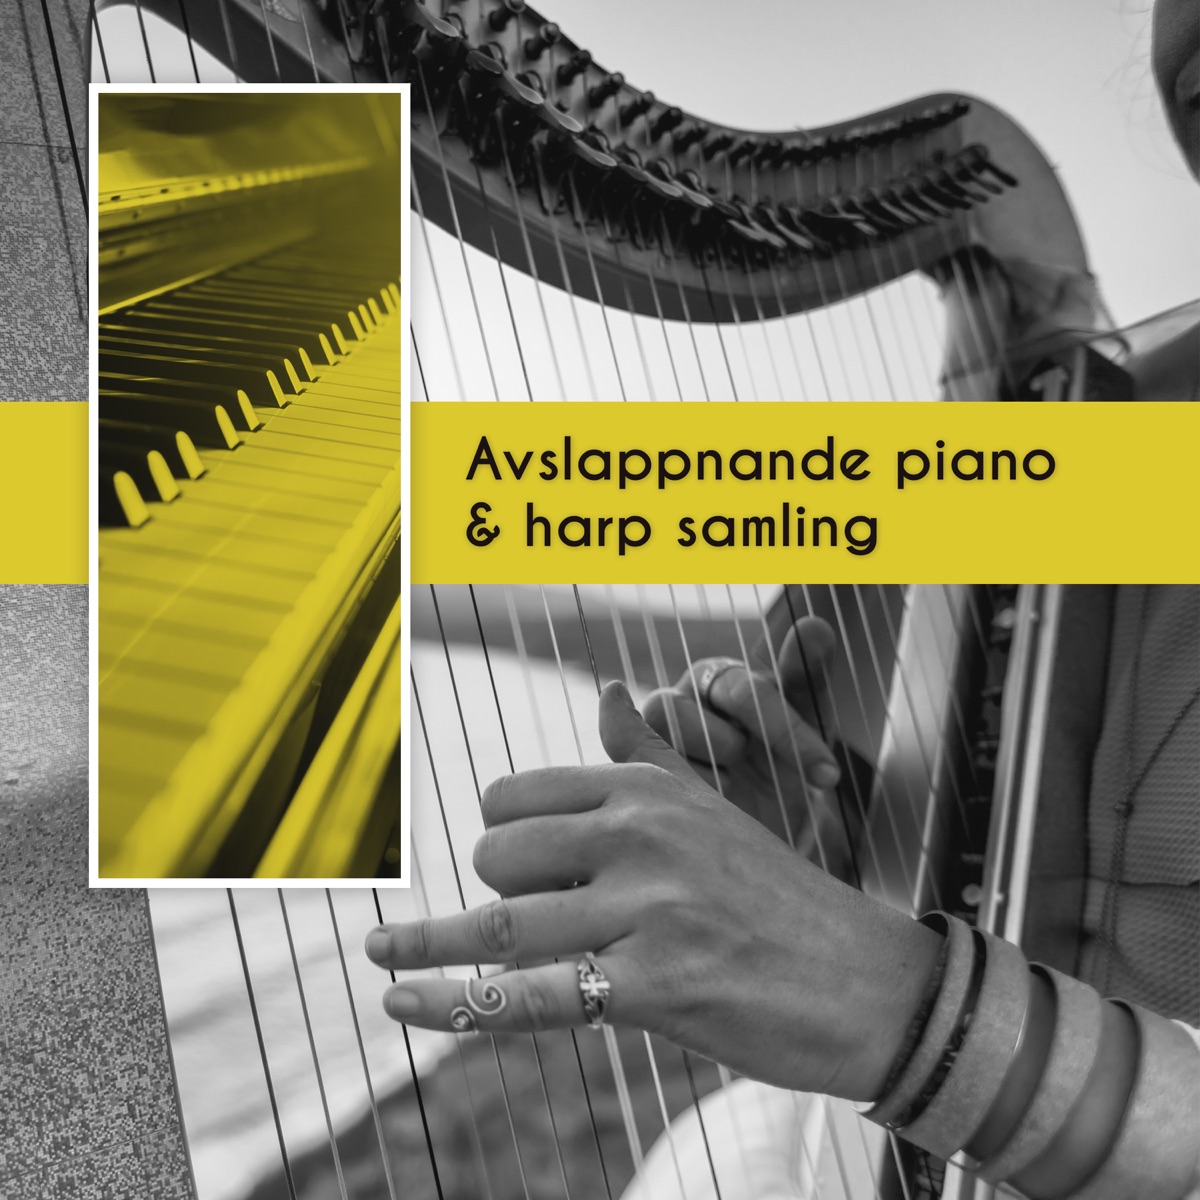 Avslappnande piano & harp samling - Vacker musik med lugnande naturljud,  Harmoni och djup avslappning by Avkopplande Zen Fristad on Apple Music